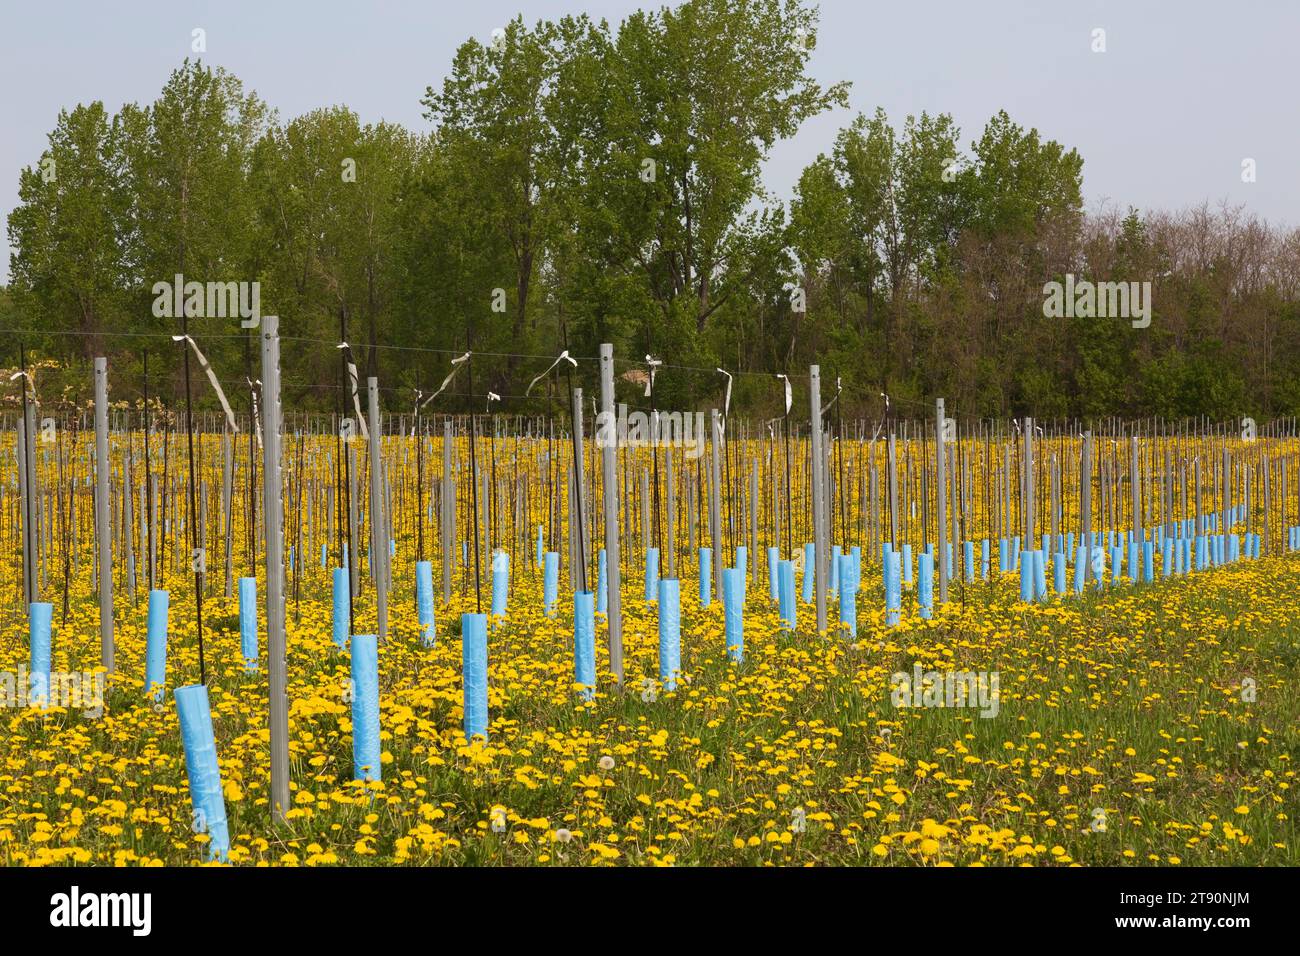 File di giovani Malus domestica - alberi di mele protetti dal vento e dal freddo con paletto e maniche di plastica blu in primavera, Quebec, Canada Foto Stock